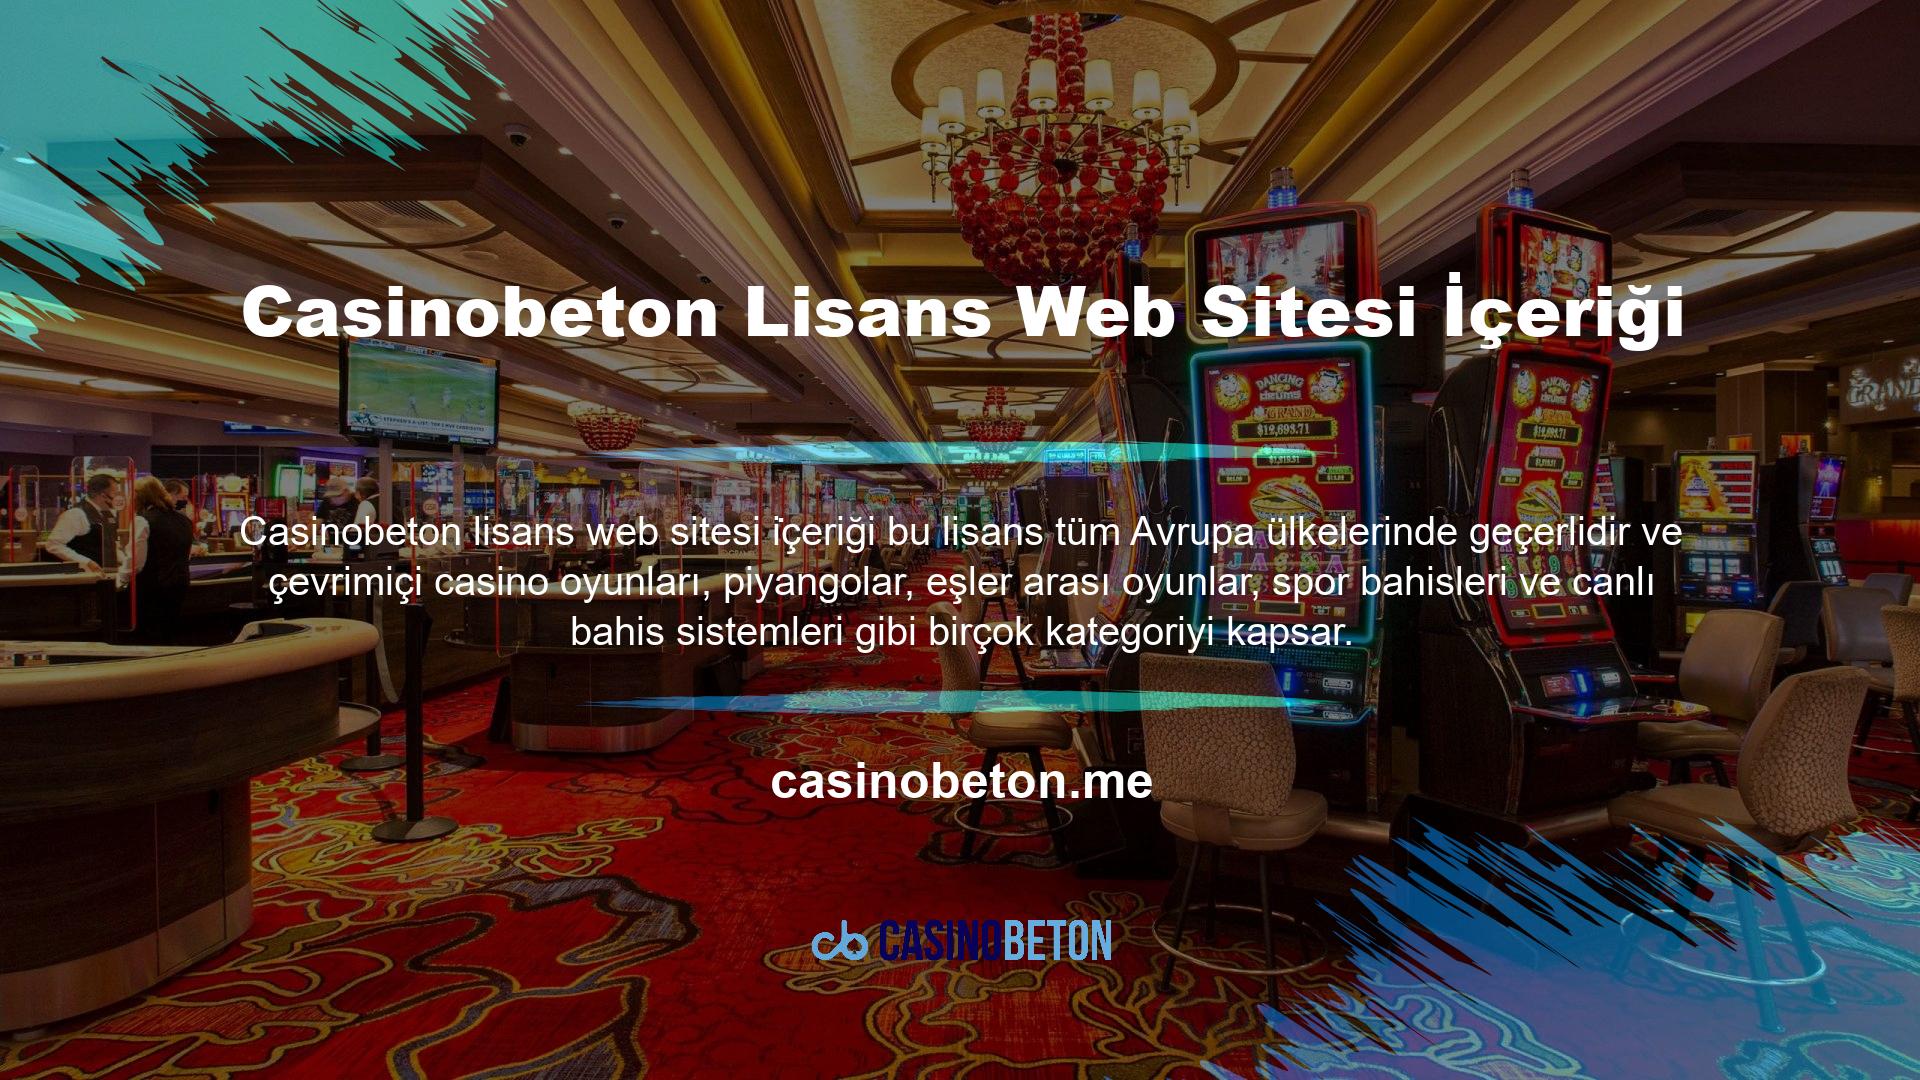 Casinobeton Türkiye'den lisanslanan ve "açık erişim" etiketli web sitesi içeriği, inceleme ve şikayet başlıklarında en iyi performans gösteren web sitelerinden biri olduğunu iddia ediyor